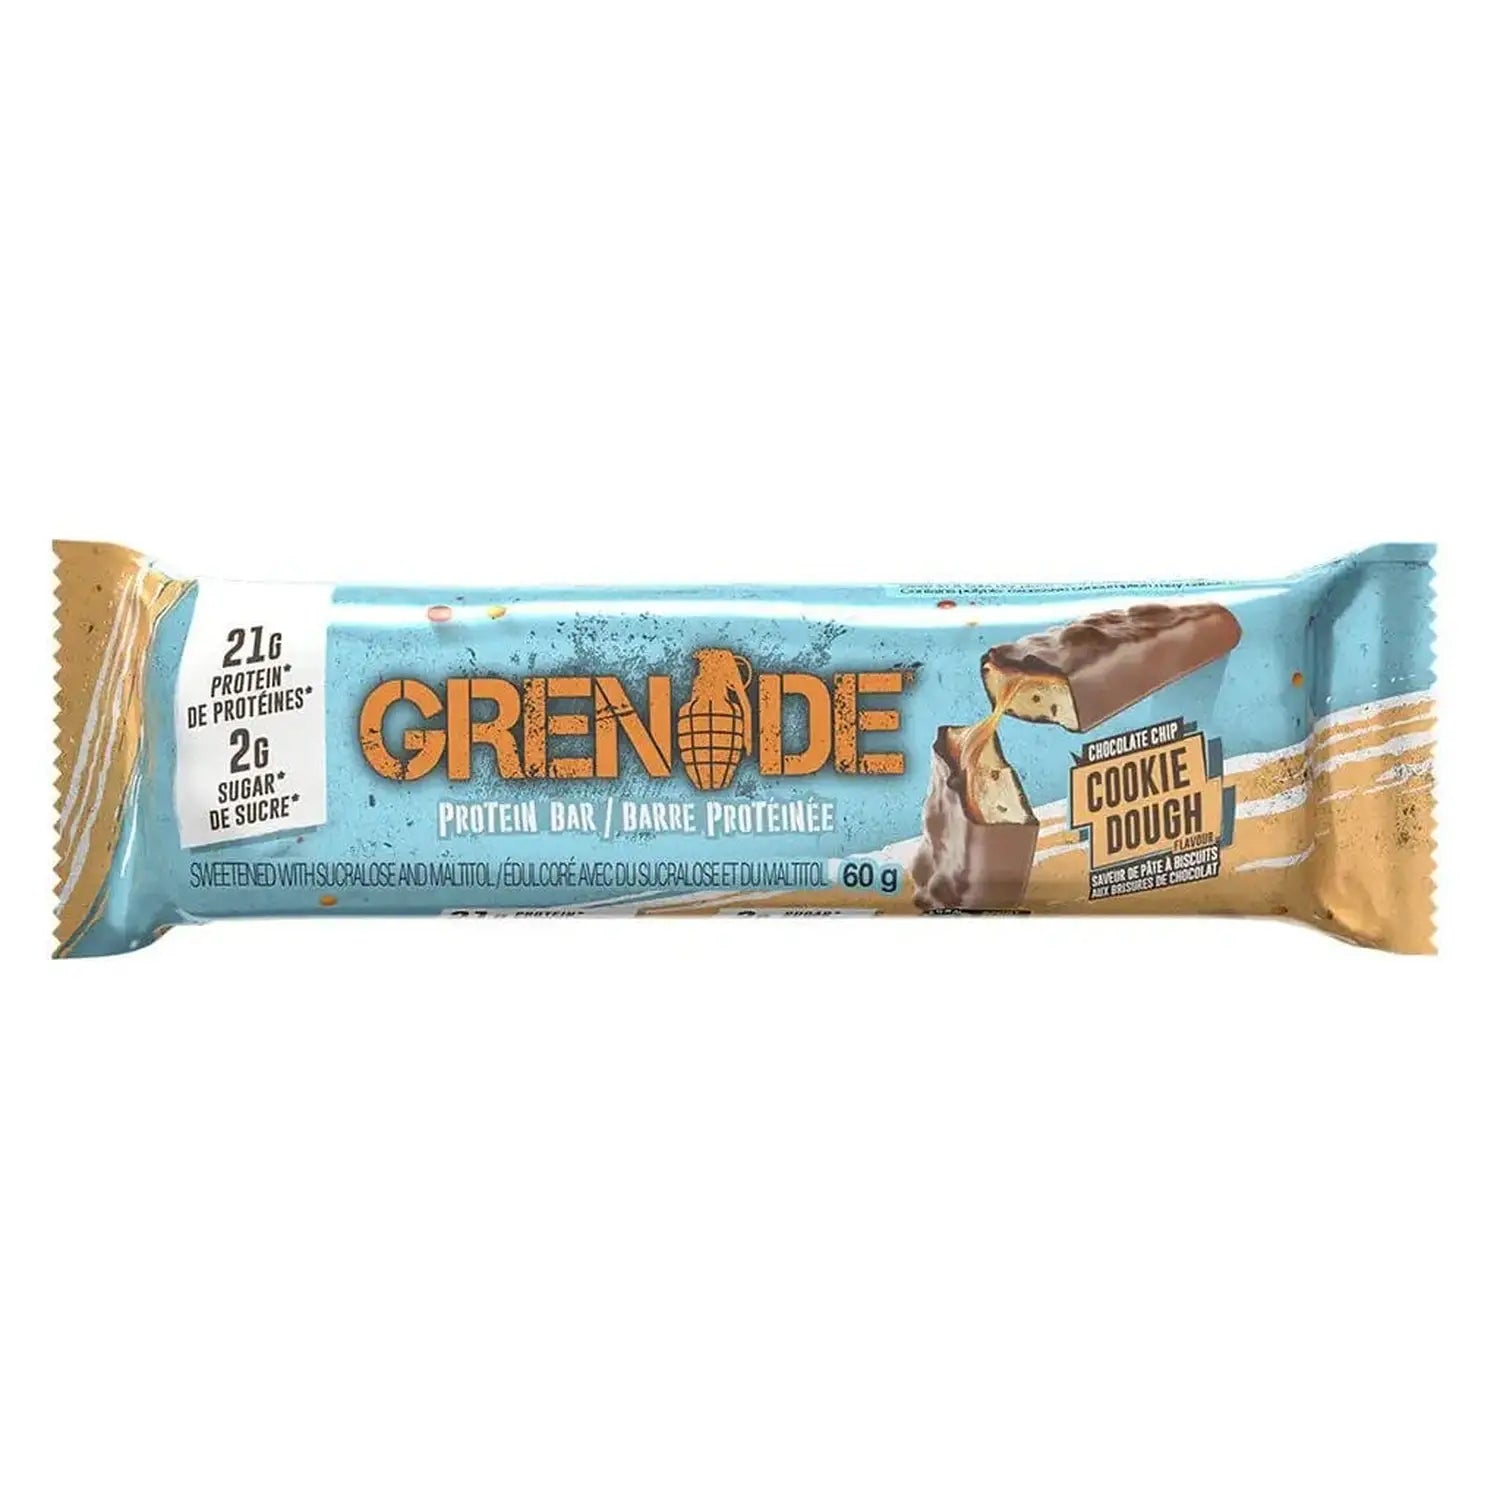 Grenade Grenade Protein Bar 60 g Chocolate Chip Cookie Dough kaufen bei HighPowered.ch